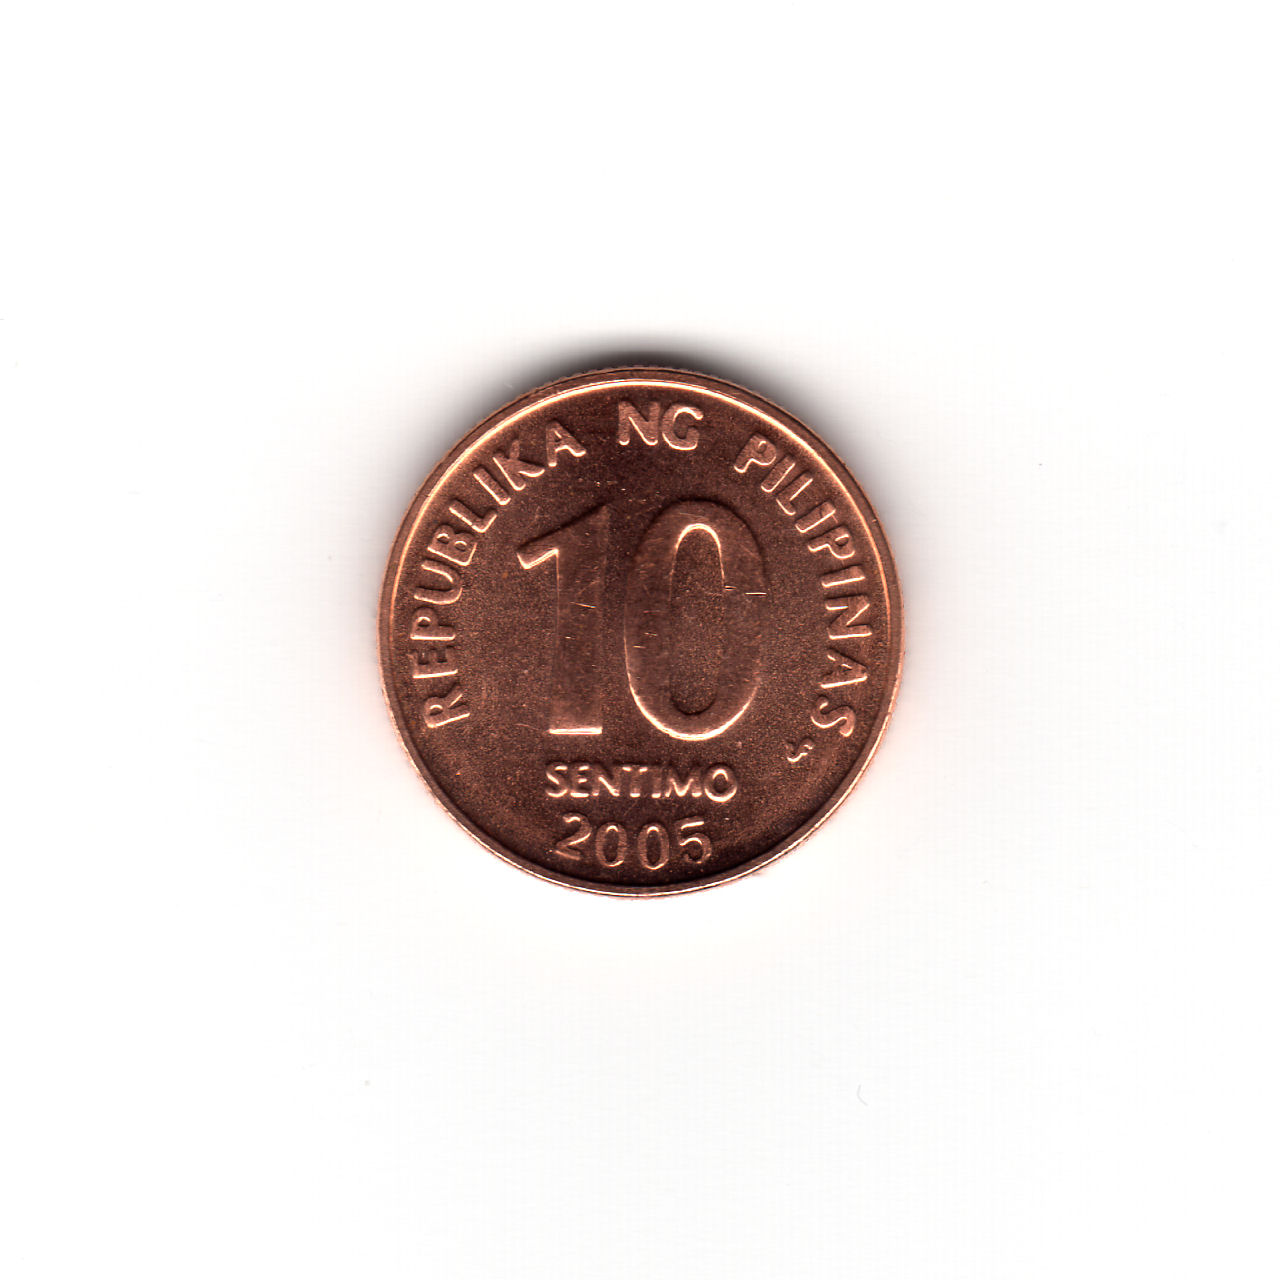 フィリピンの硬貨 2005年 10 SENTIMO